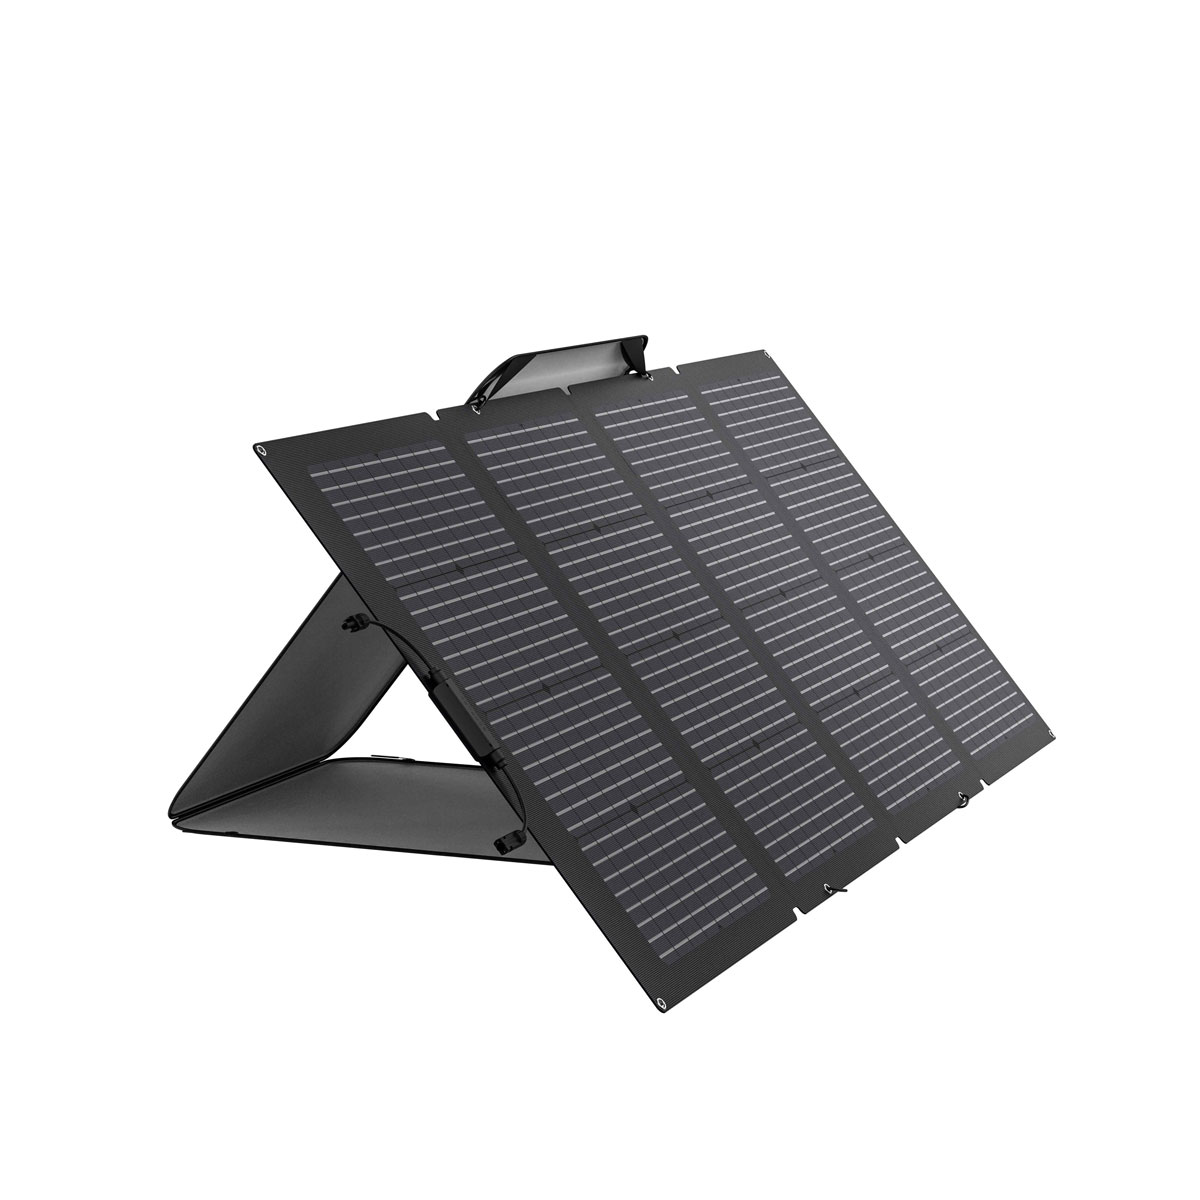 EcoFlow Solar Panel 220W faltbares Solarmodul mit Tragetasche